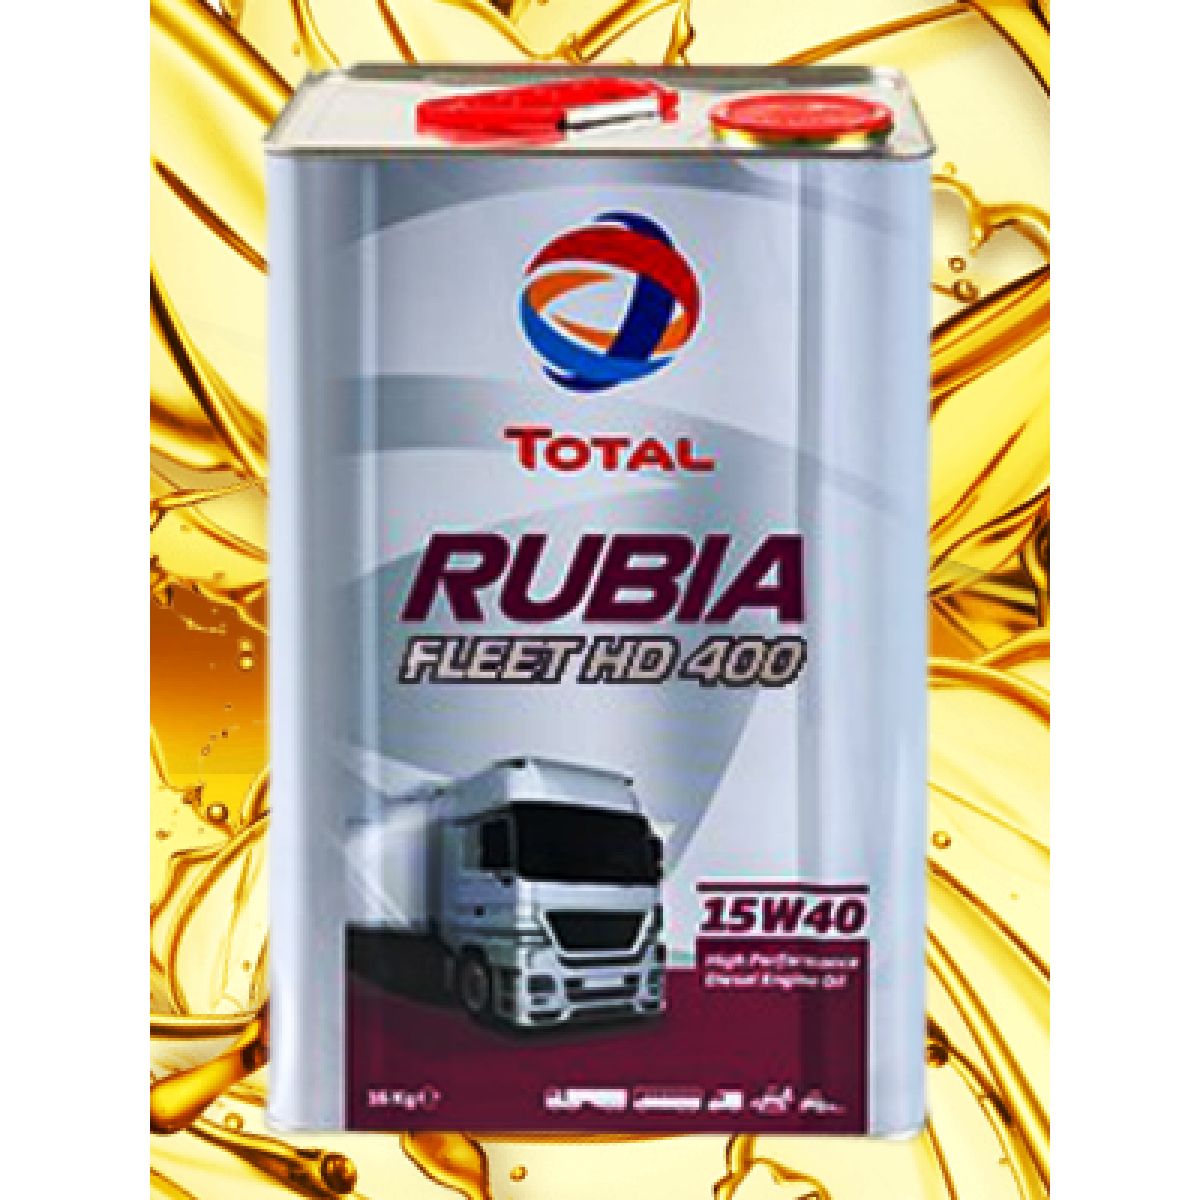 TOTAL RUBIA FLEET HD 400 15W-40 TNK